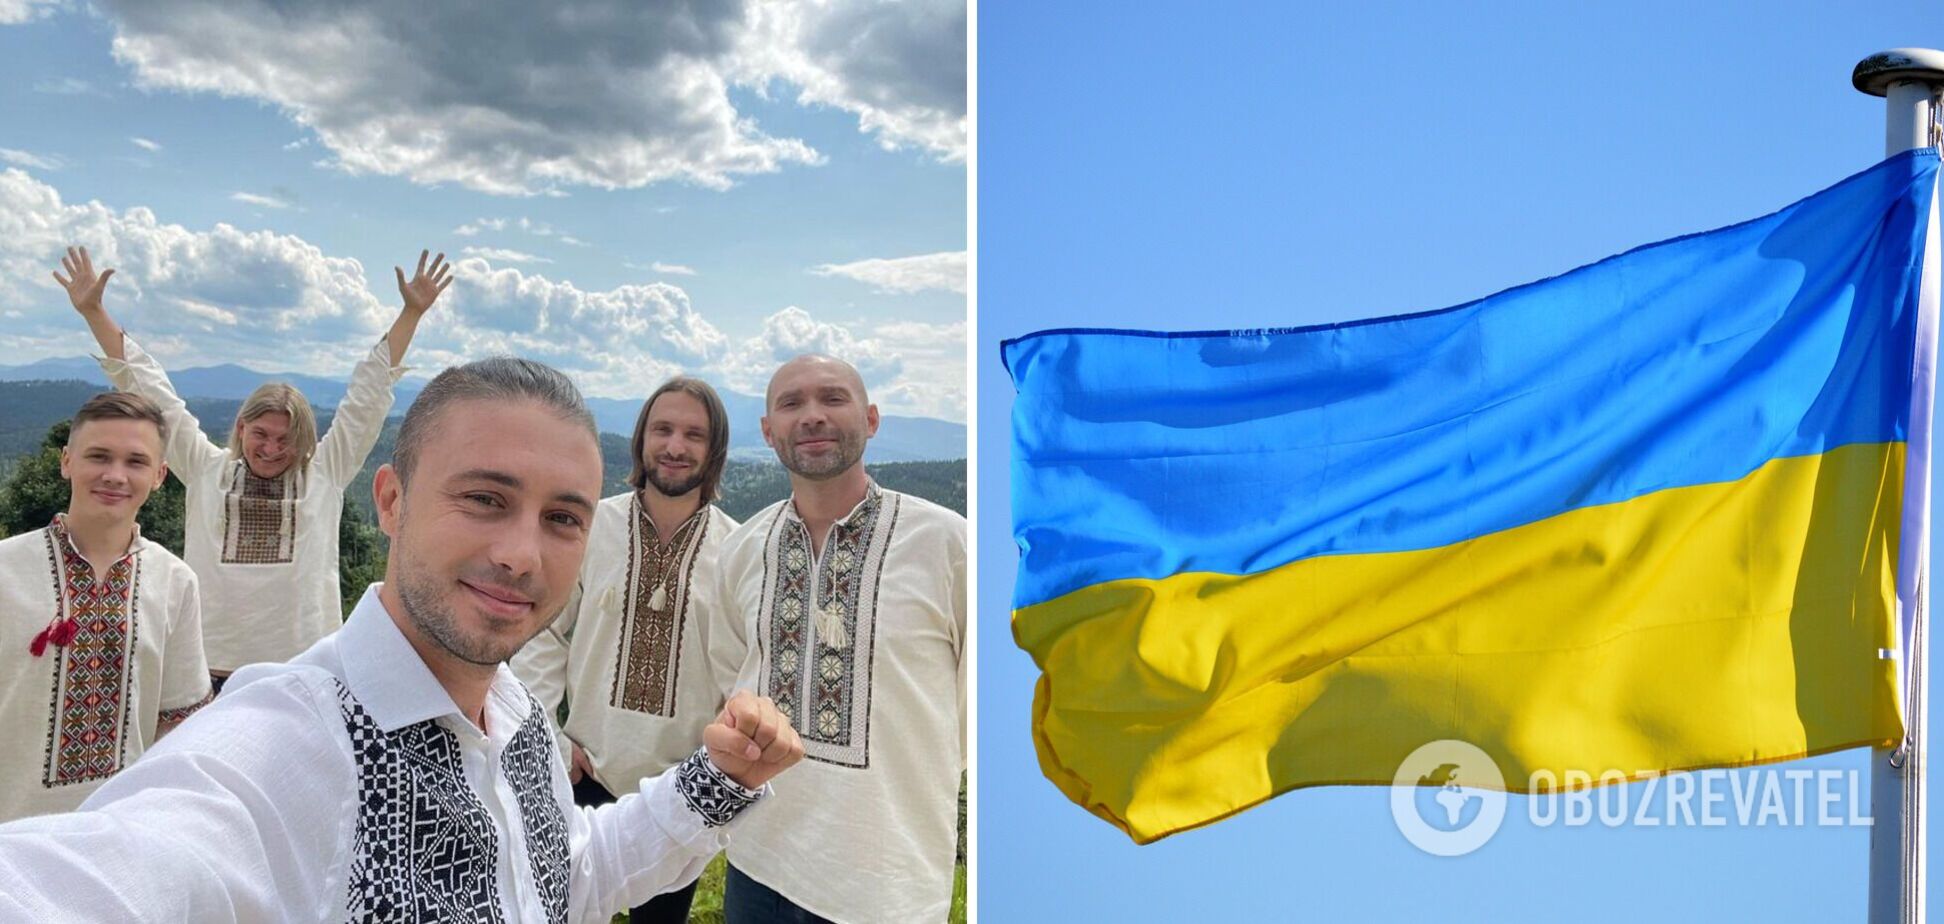 'Ми дали світу щит, тепер прийшов наш час злету і інновацій': Тополя озвучив рецепт повної перемоги України